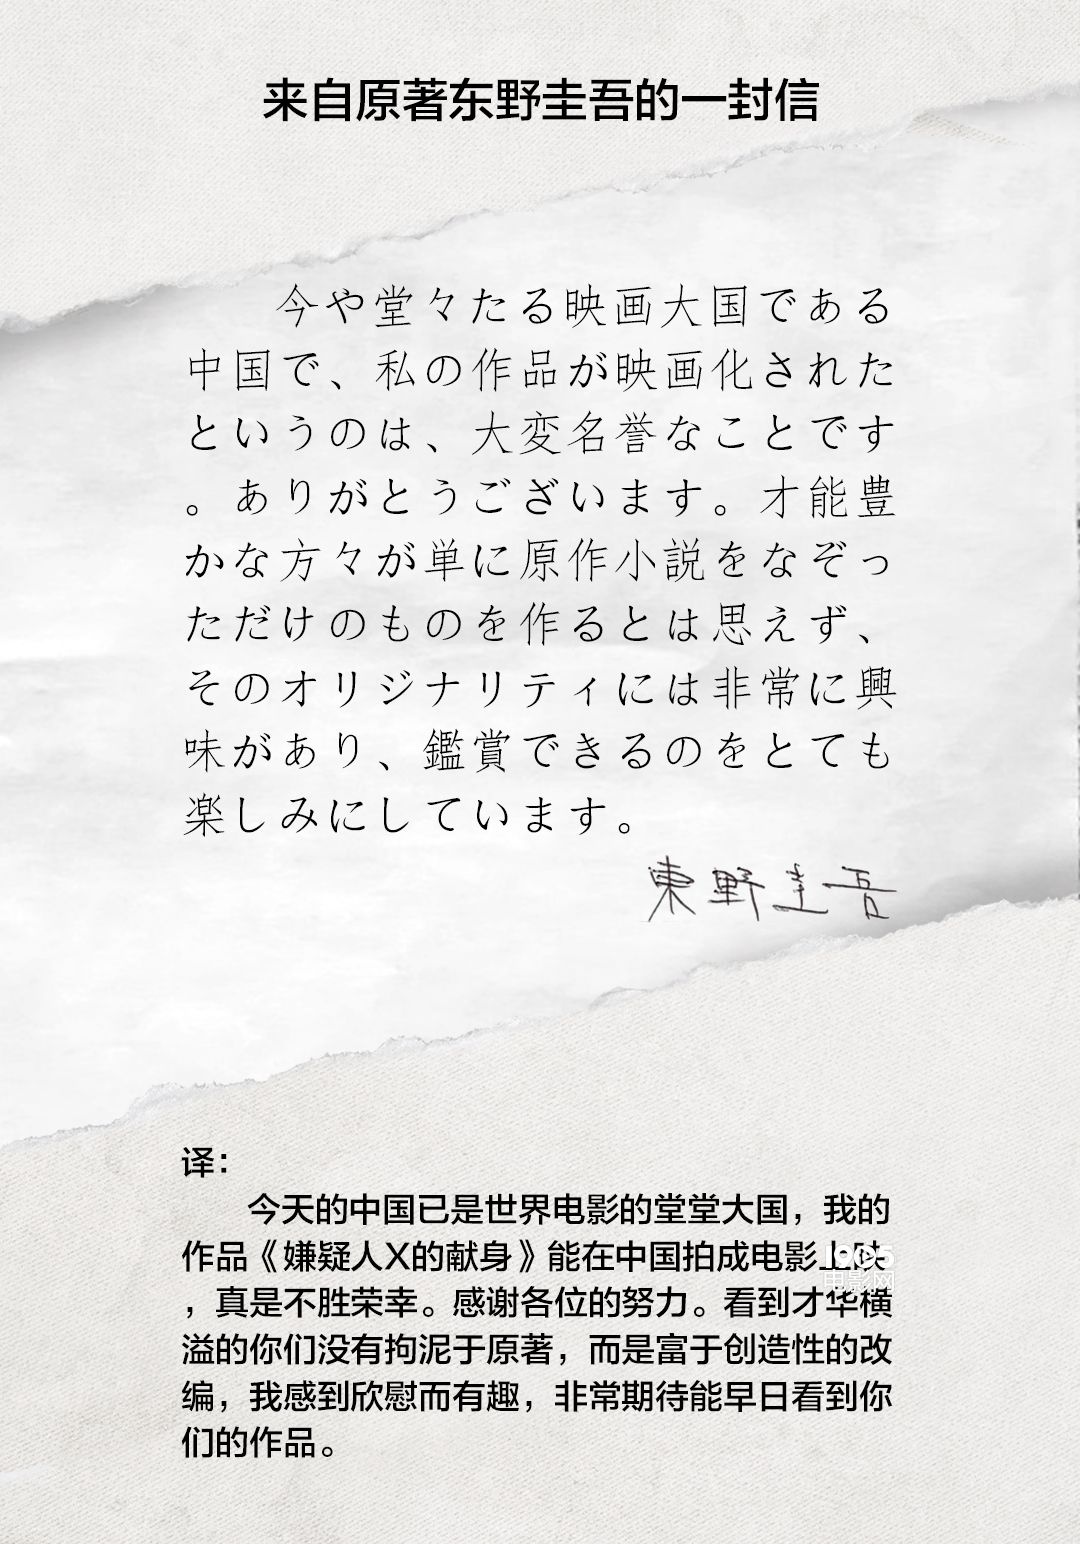 原著作者东野圭吾写亲笔信 盛赞苏有朋版《嫌疑人》